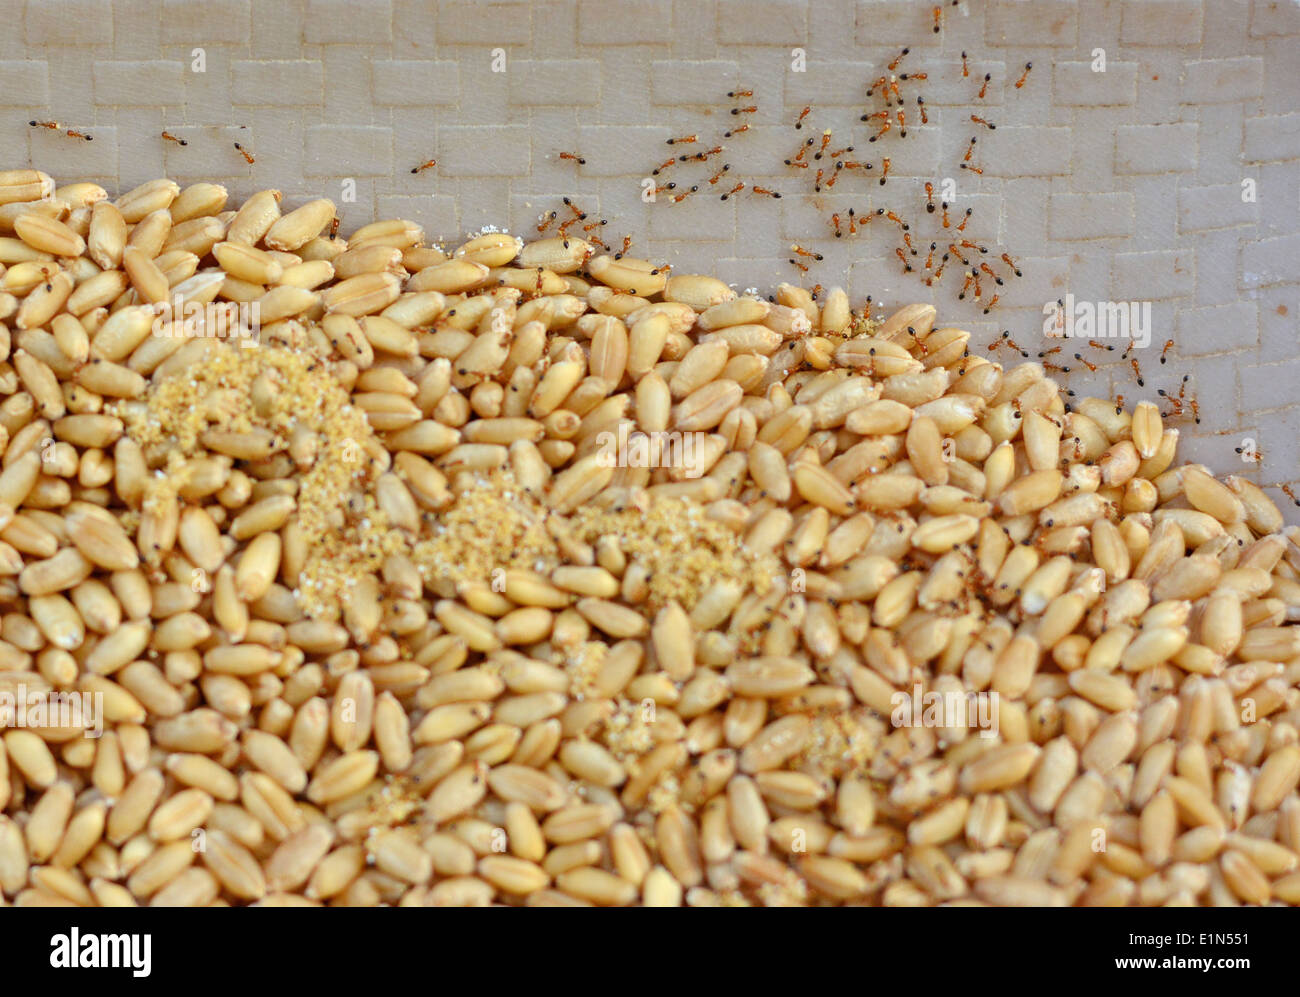 Hormigas que se están alimentando y transportando granos de trigo Foto de stock